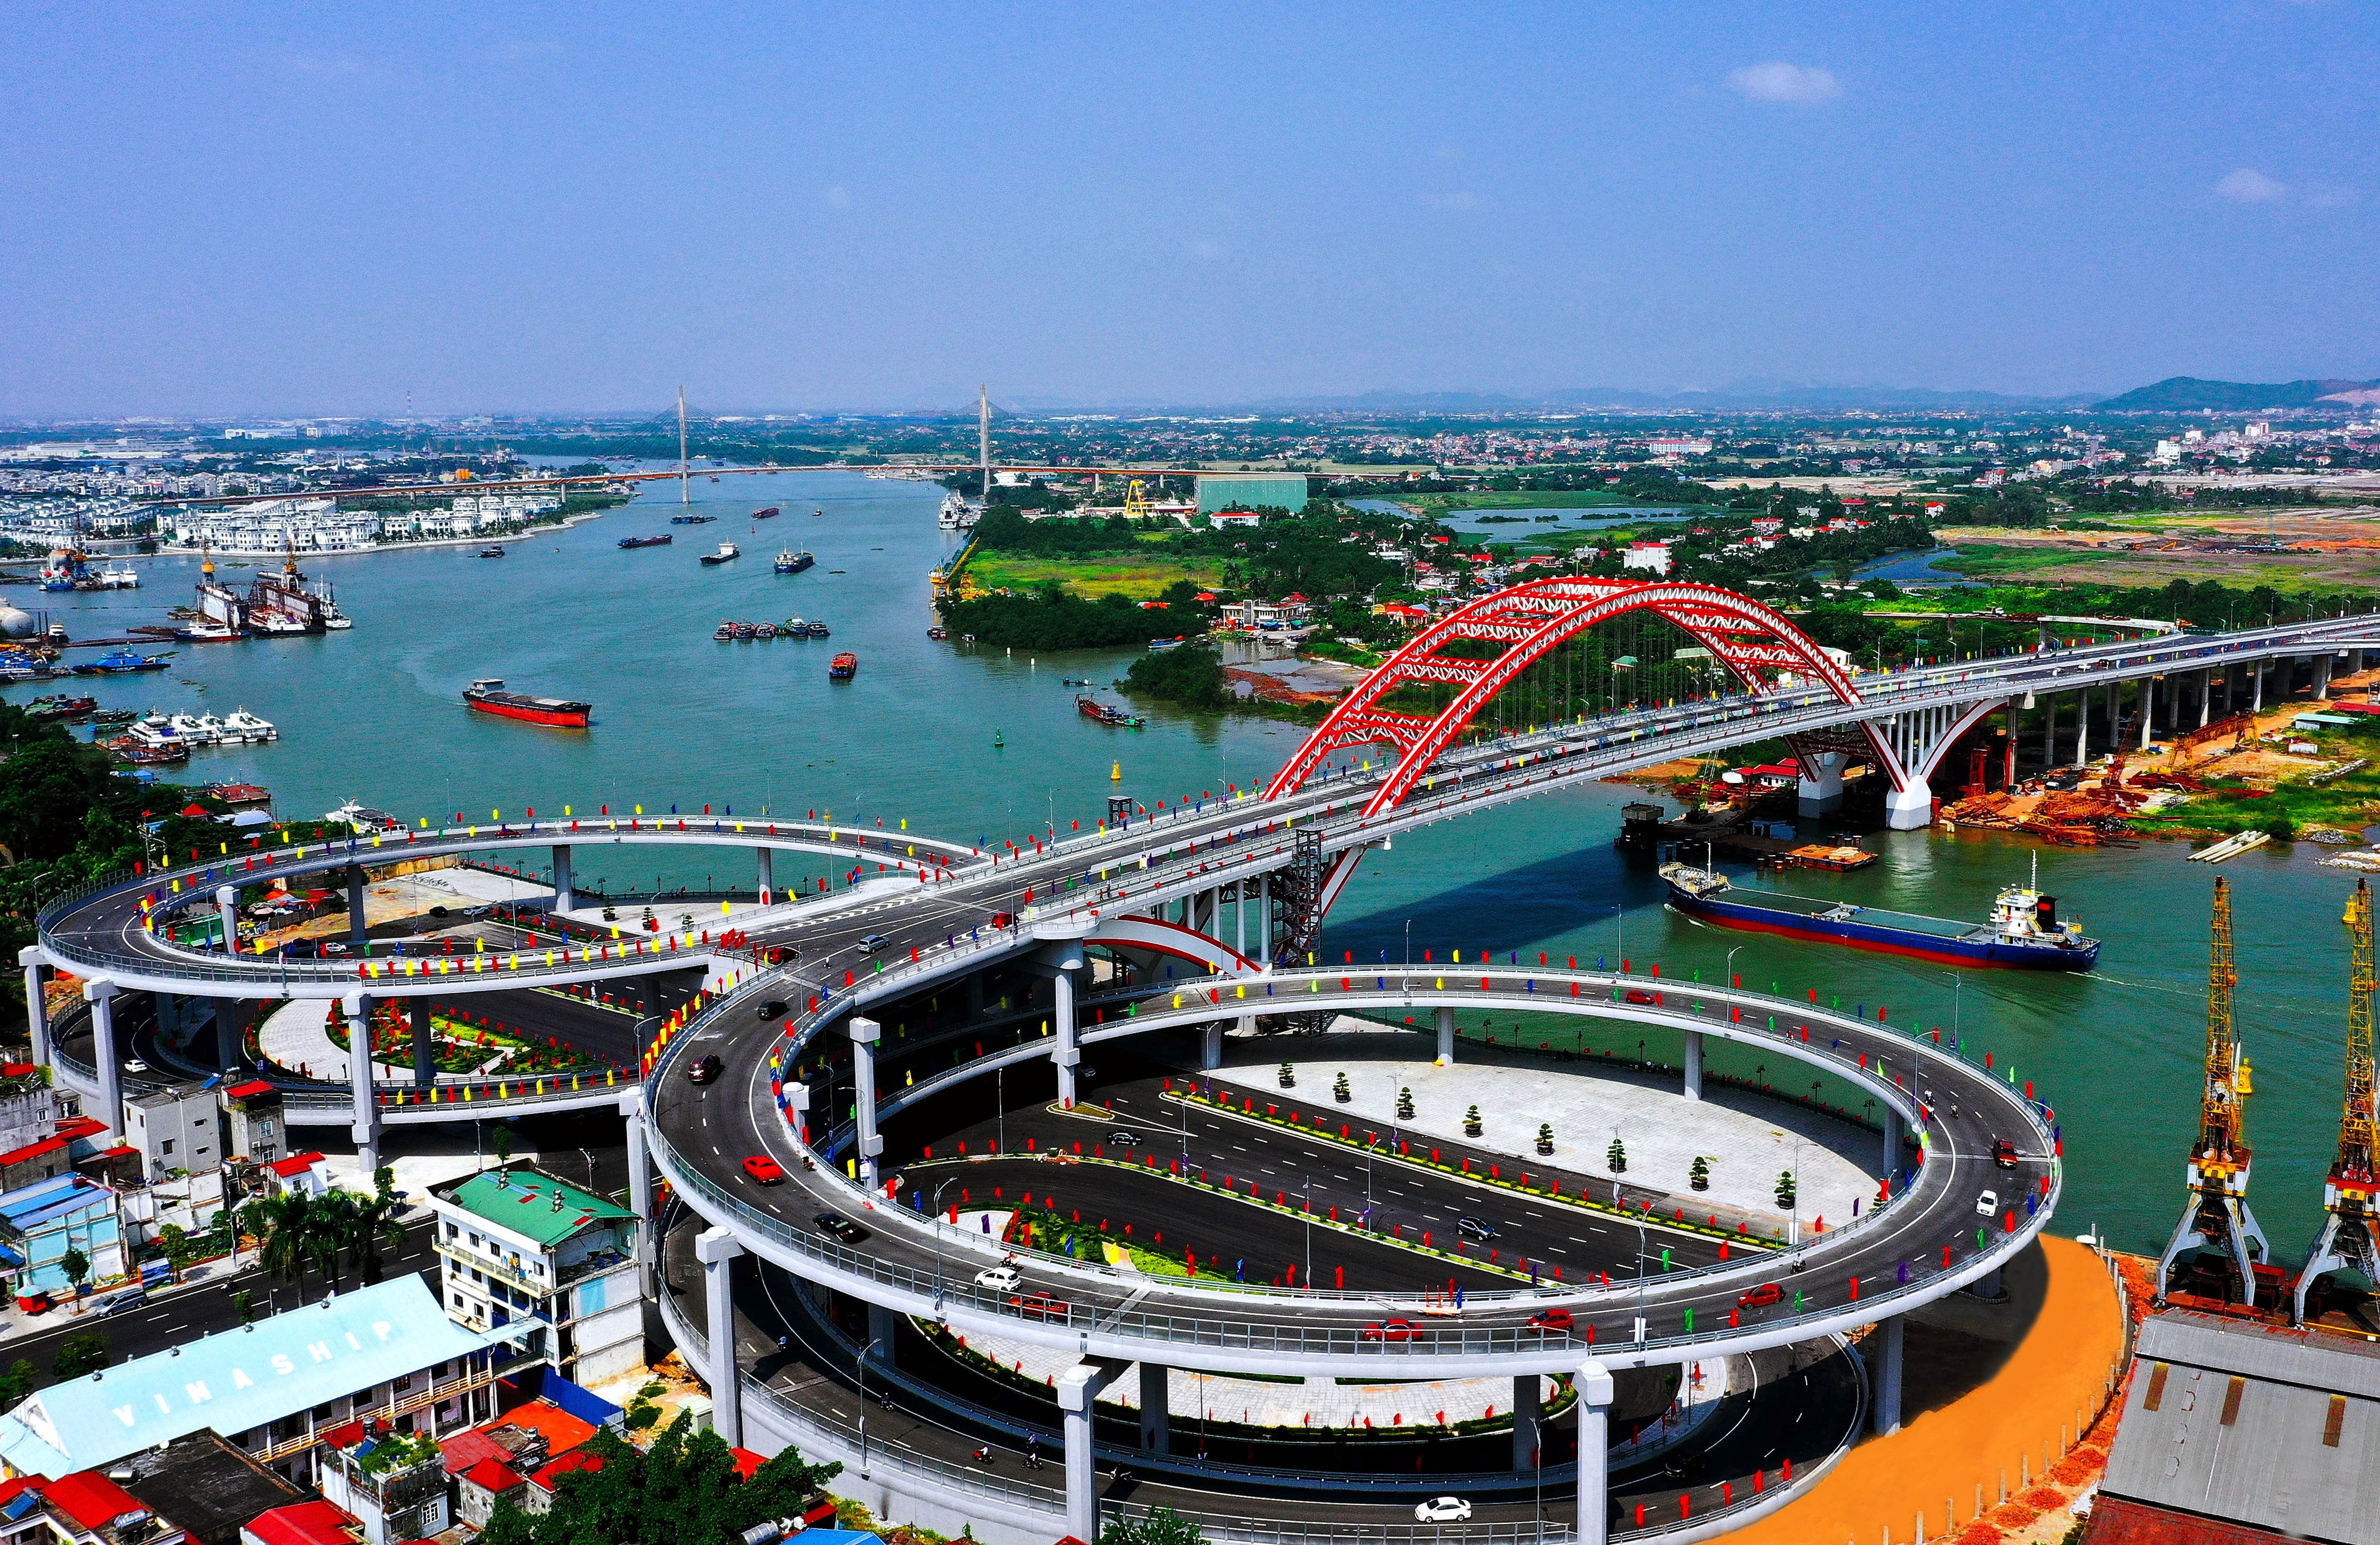  Cầu Hoàng Văn Thụ là cây cầu hiện đại, do Việt Nam hoàn toàn thiết kế và thi công, một trong những công trình trọng điểm mang dấu ấn lớn của Hải Phòng. (Ảnh: Trọng Luân/TTXVN)  